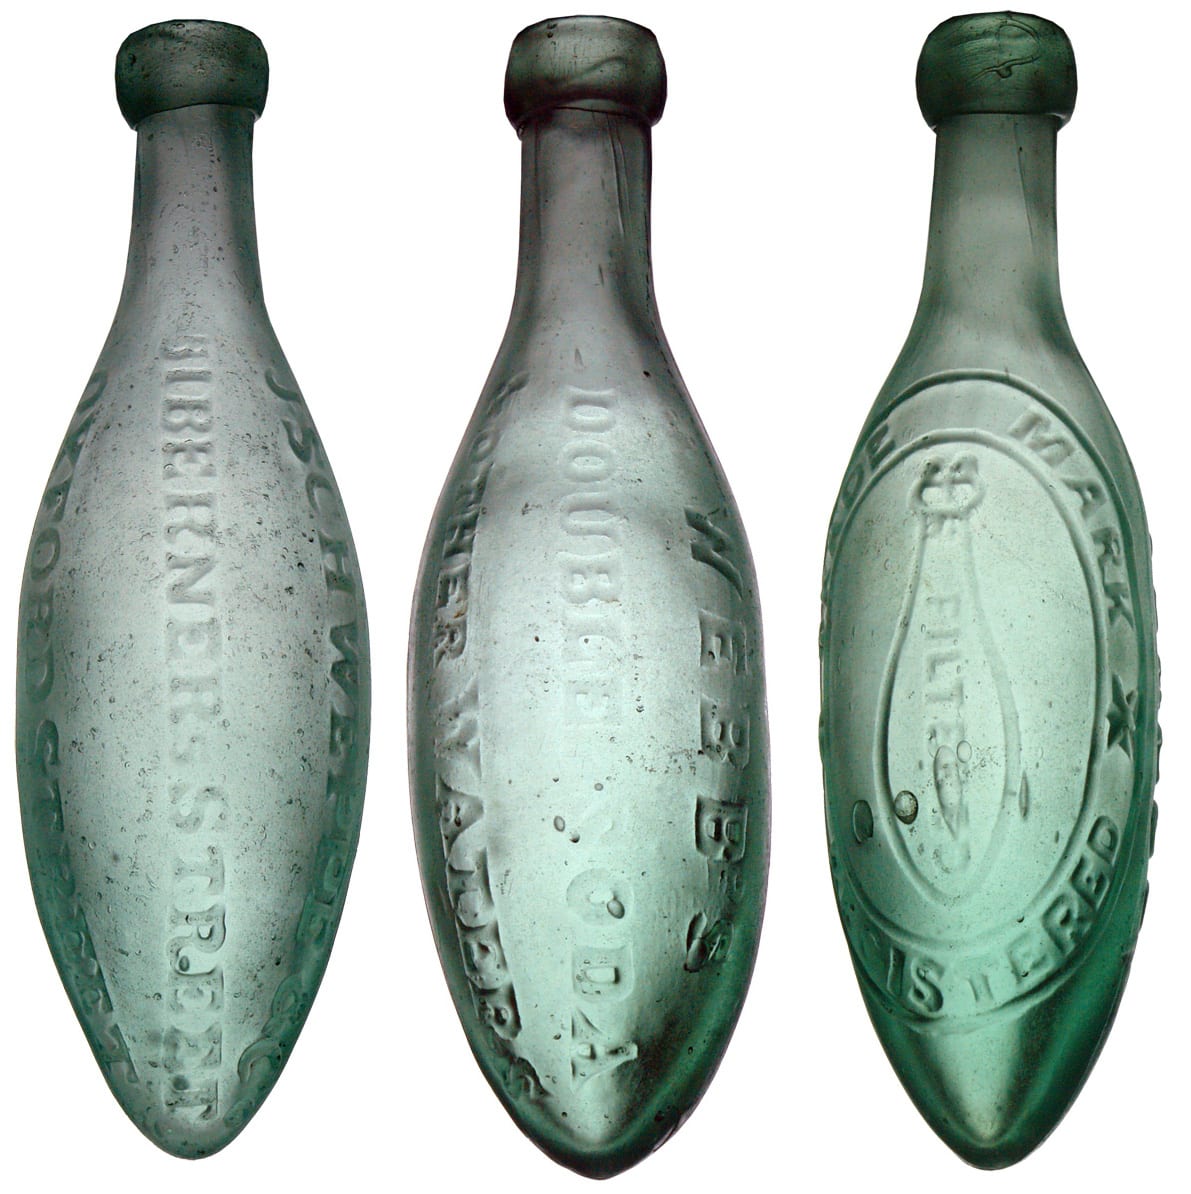 Schweppe Webb's Strawson Liverpool Torpedo Bottles